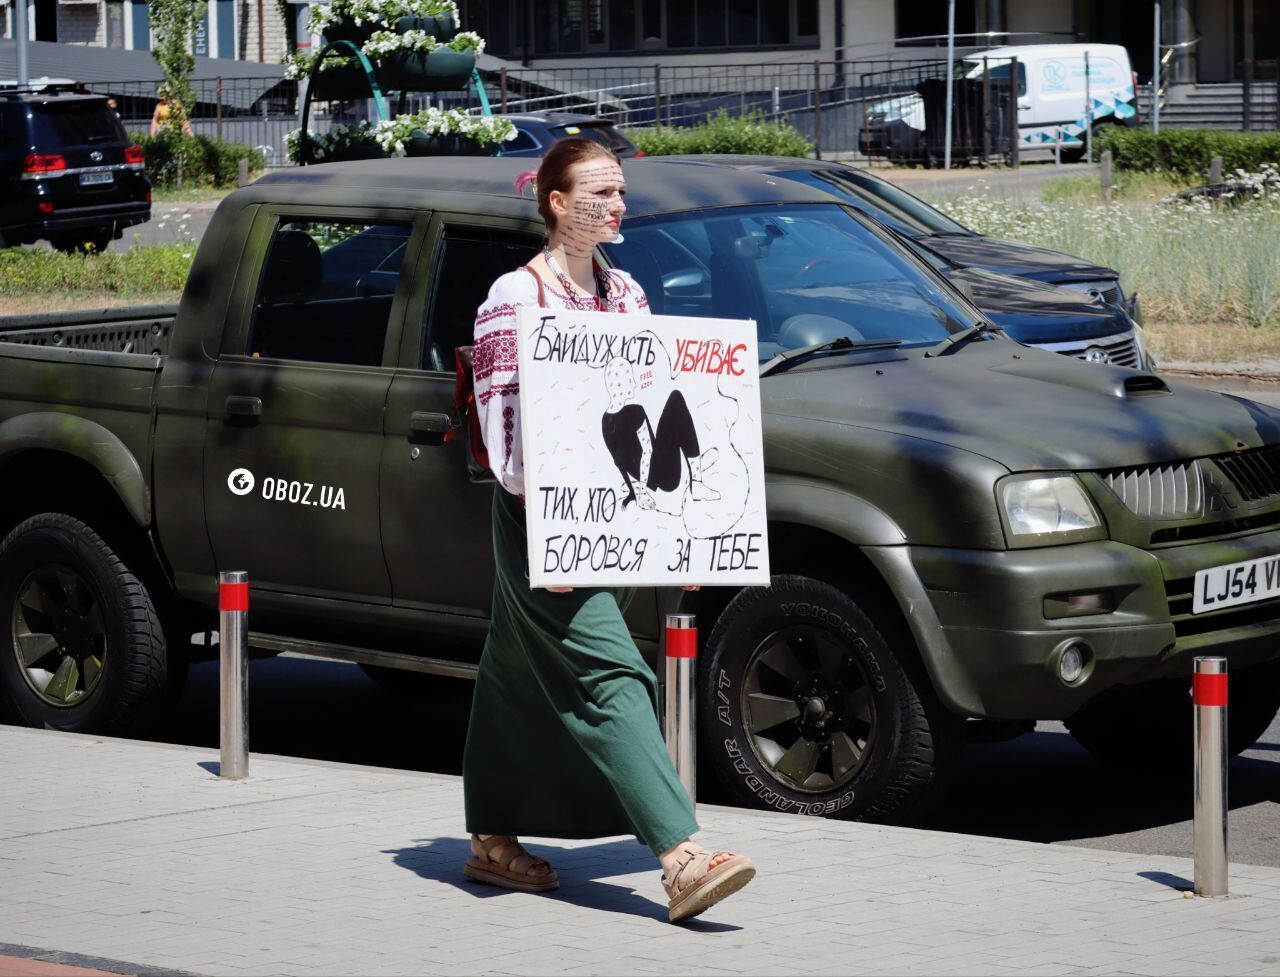 Полон – це пекло: в Києві влаштували акцію на підтримку полонених Free Azov